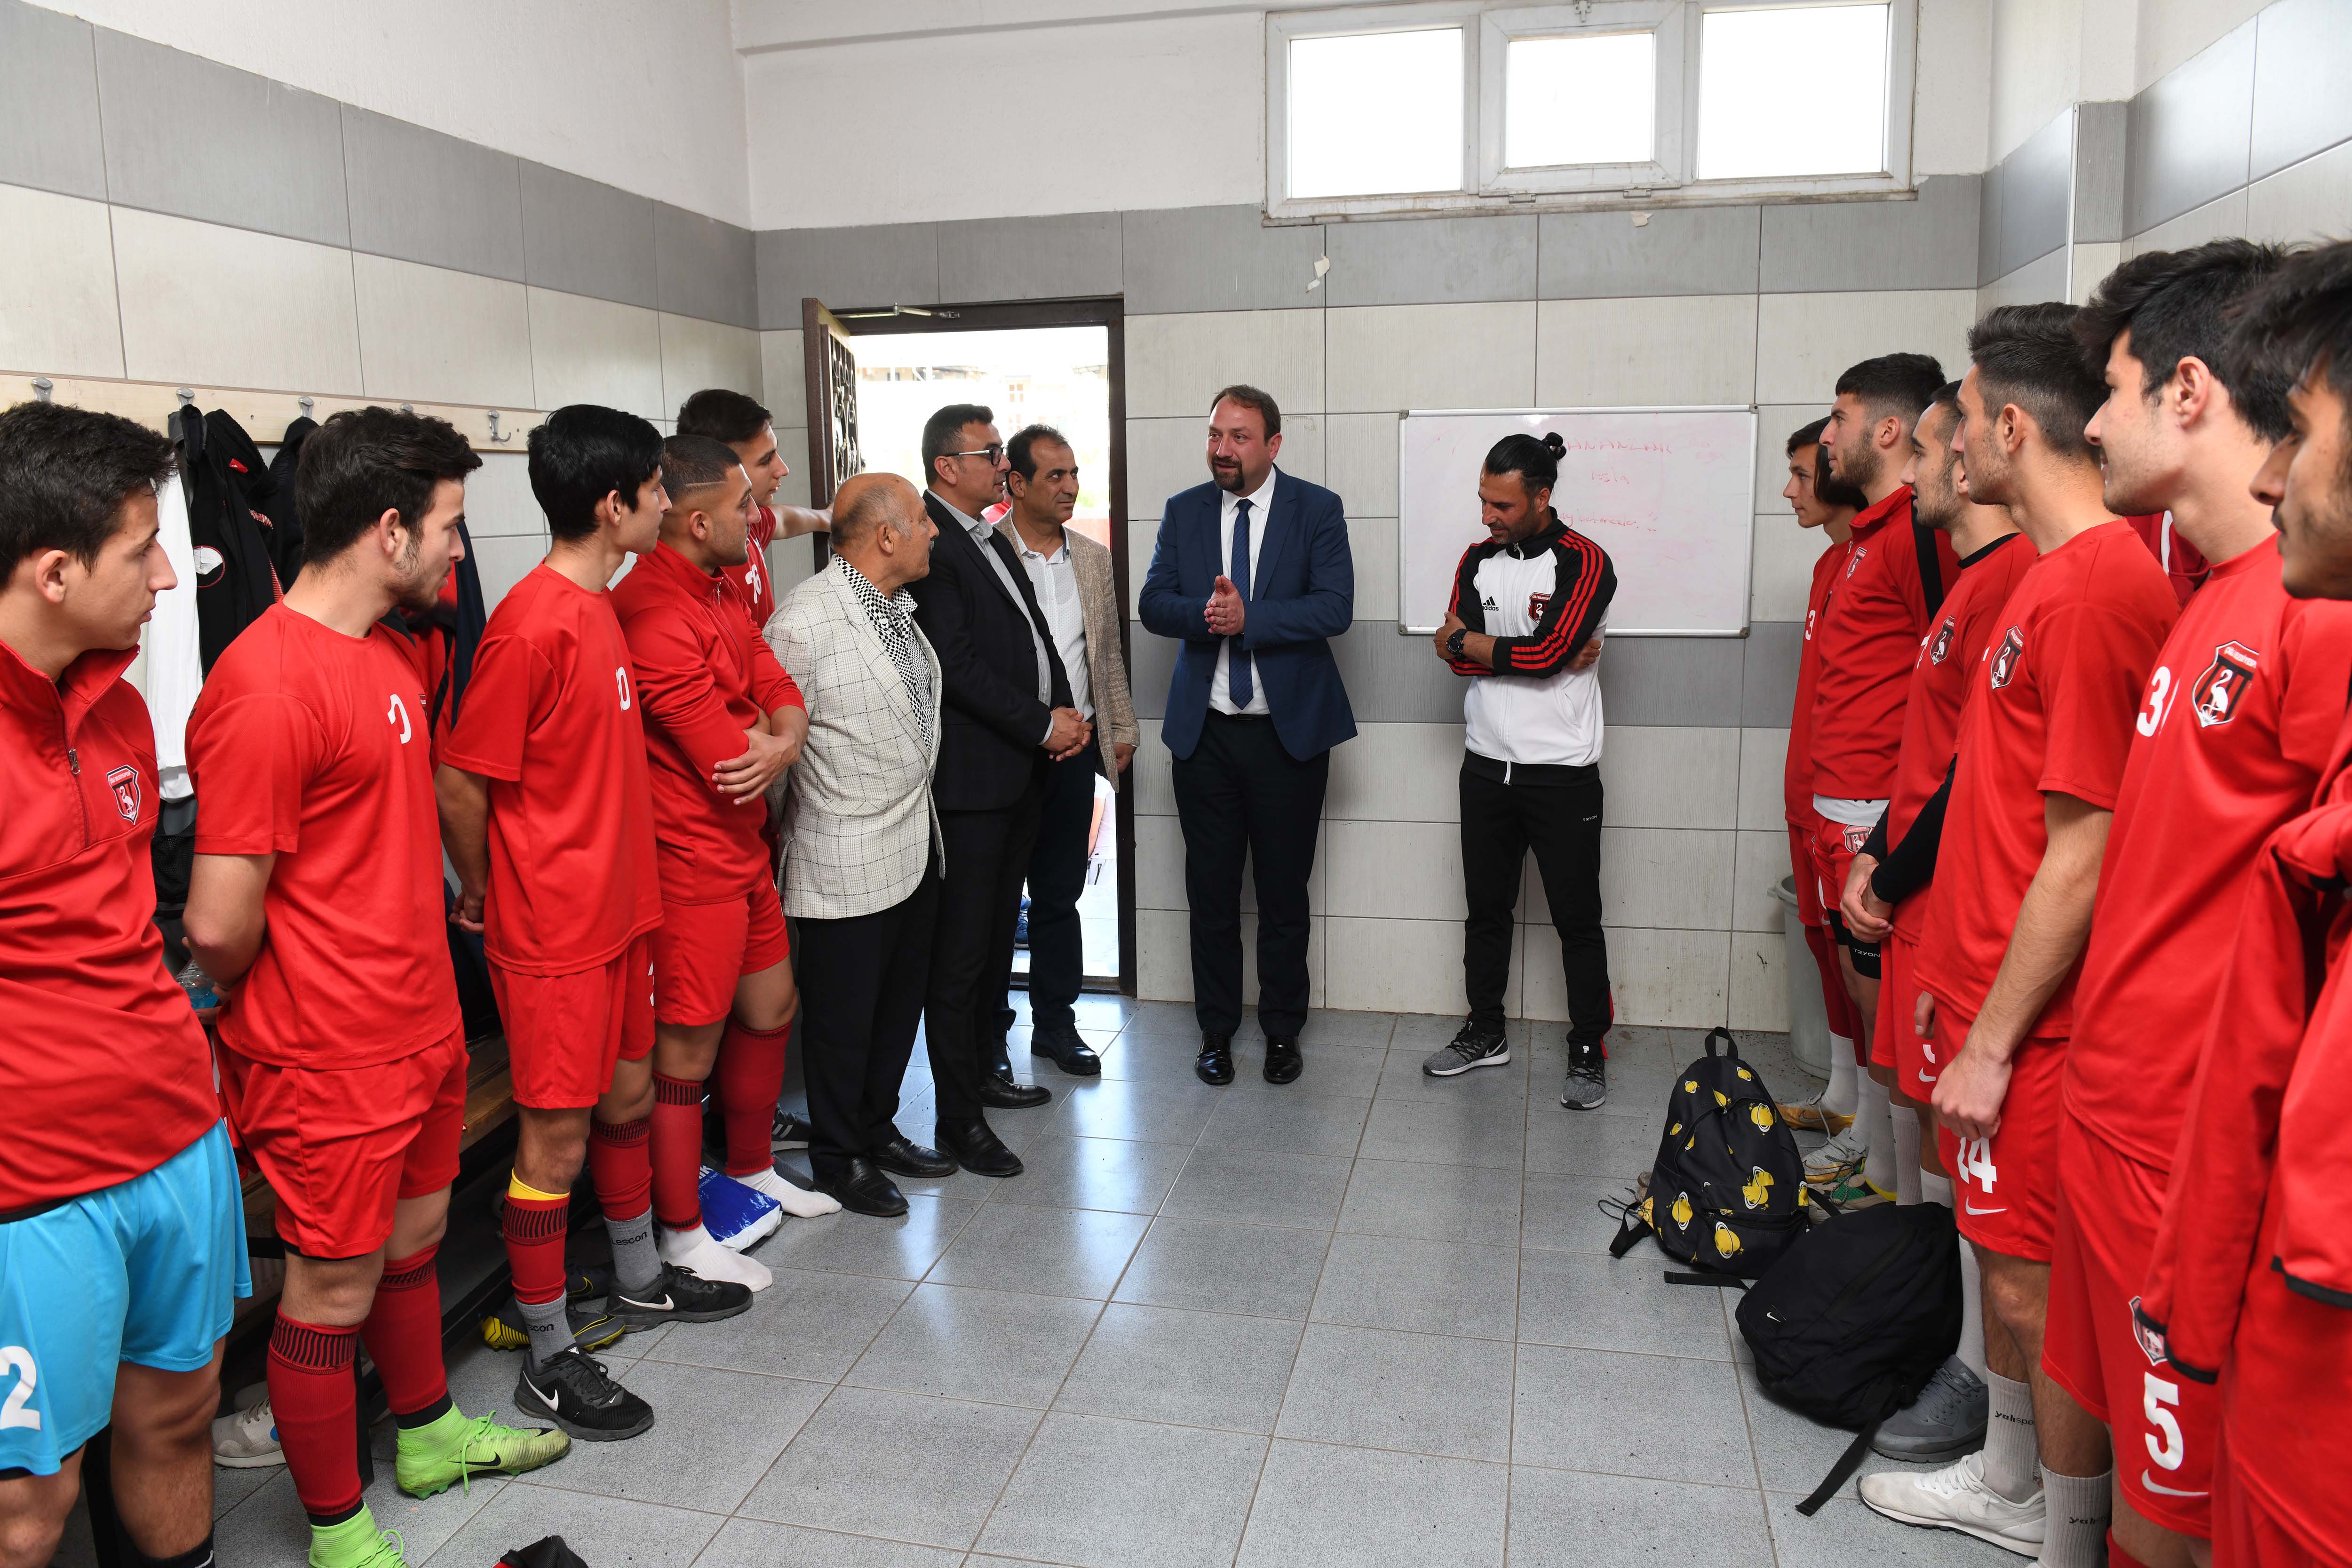 Başkan Gümrükçü'den futbolculara moral ziyareti